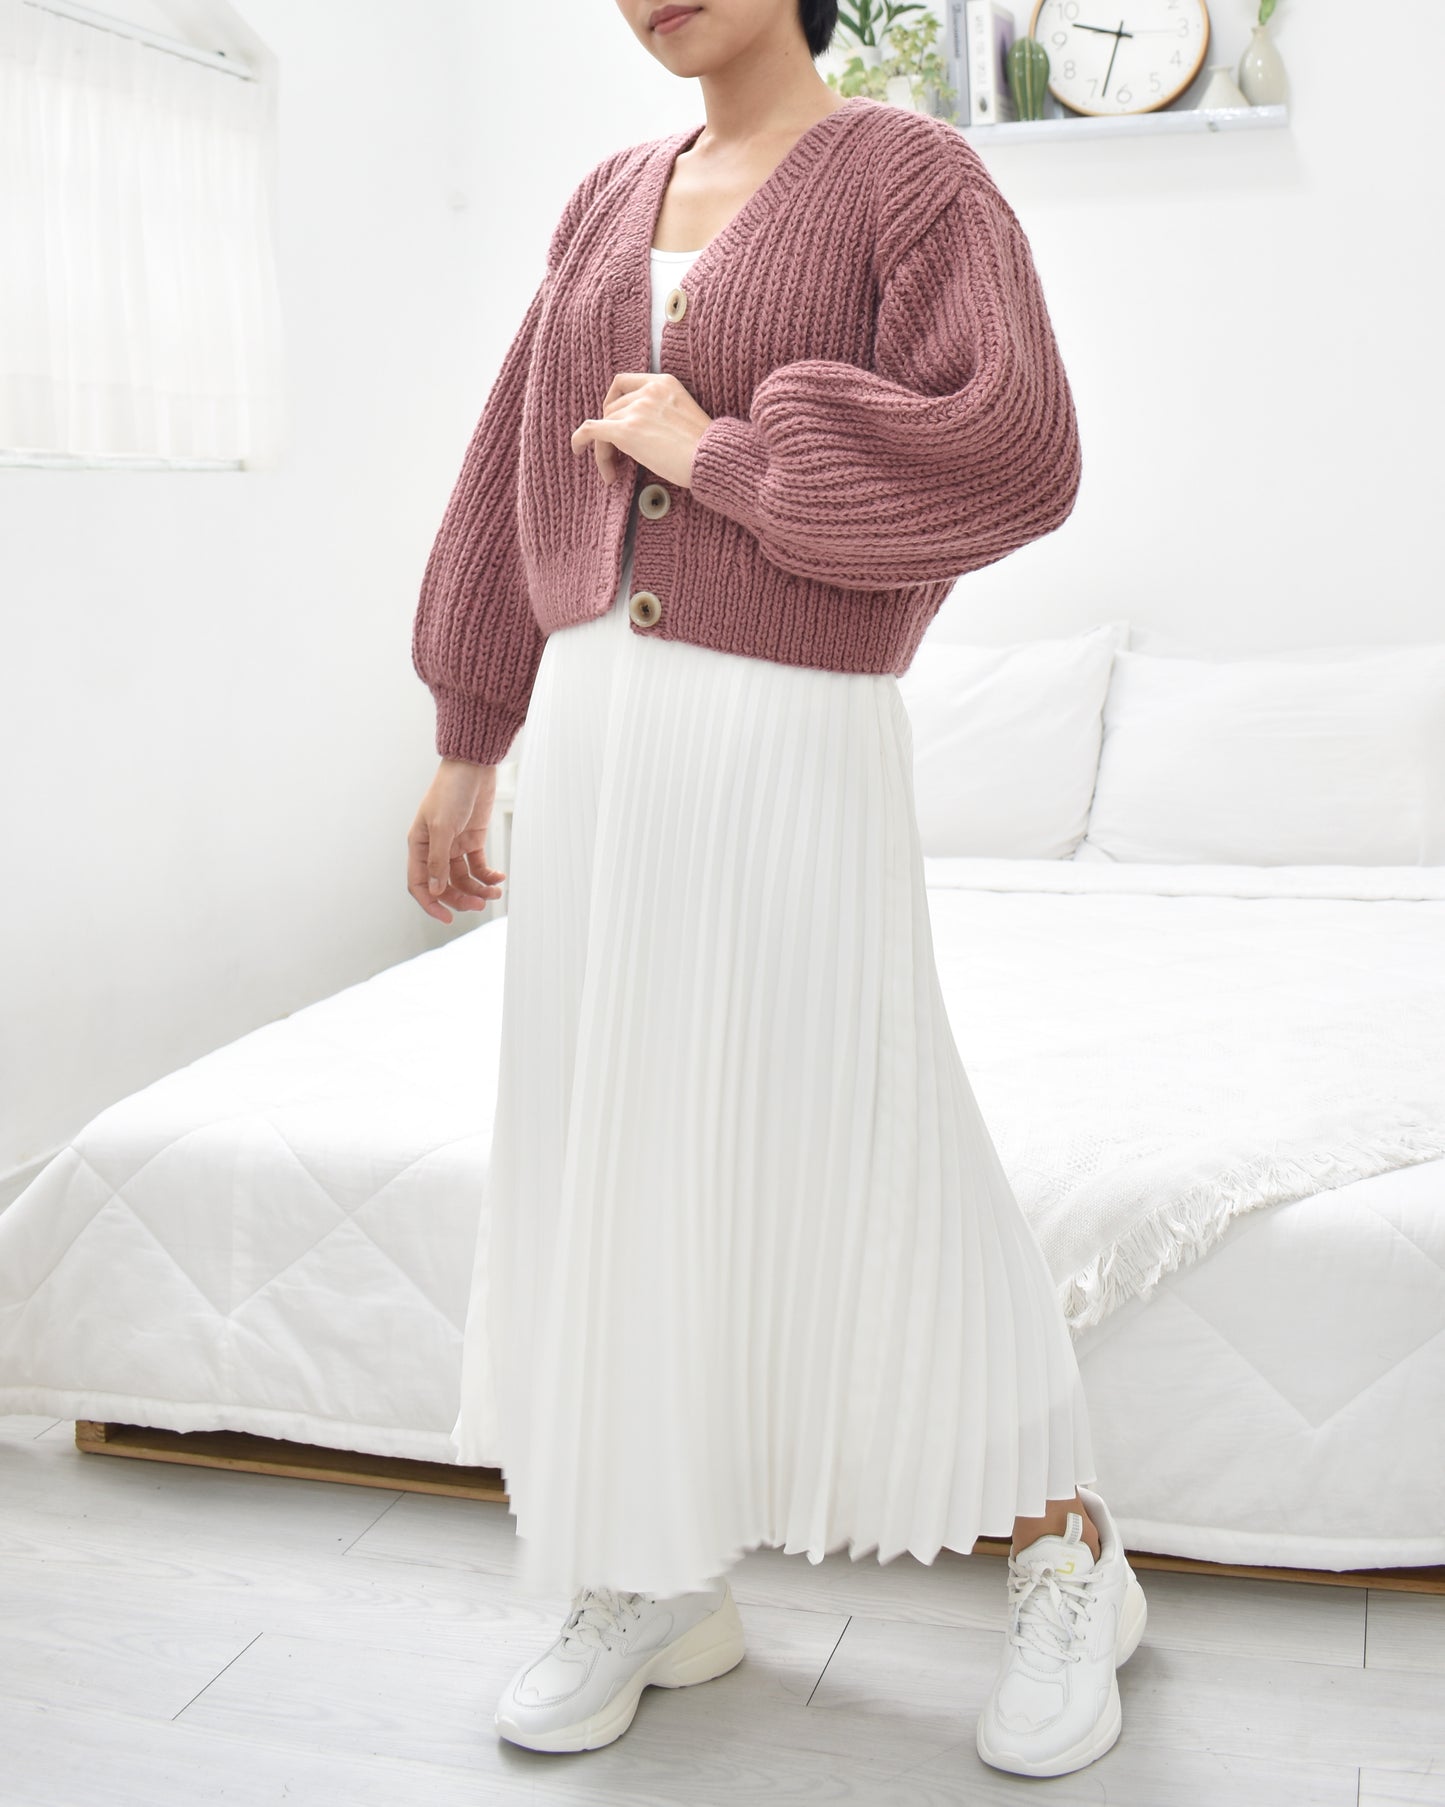 Cardigan No.17 | Knitting chunky sweater pattern